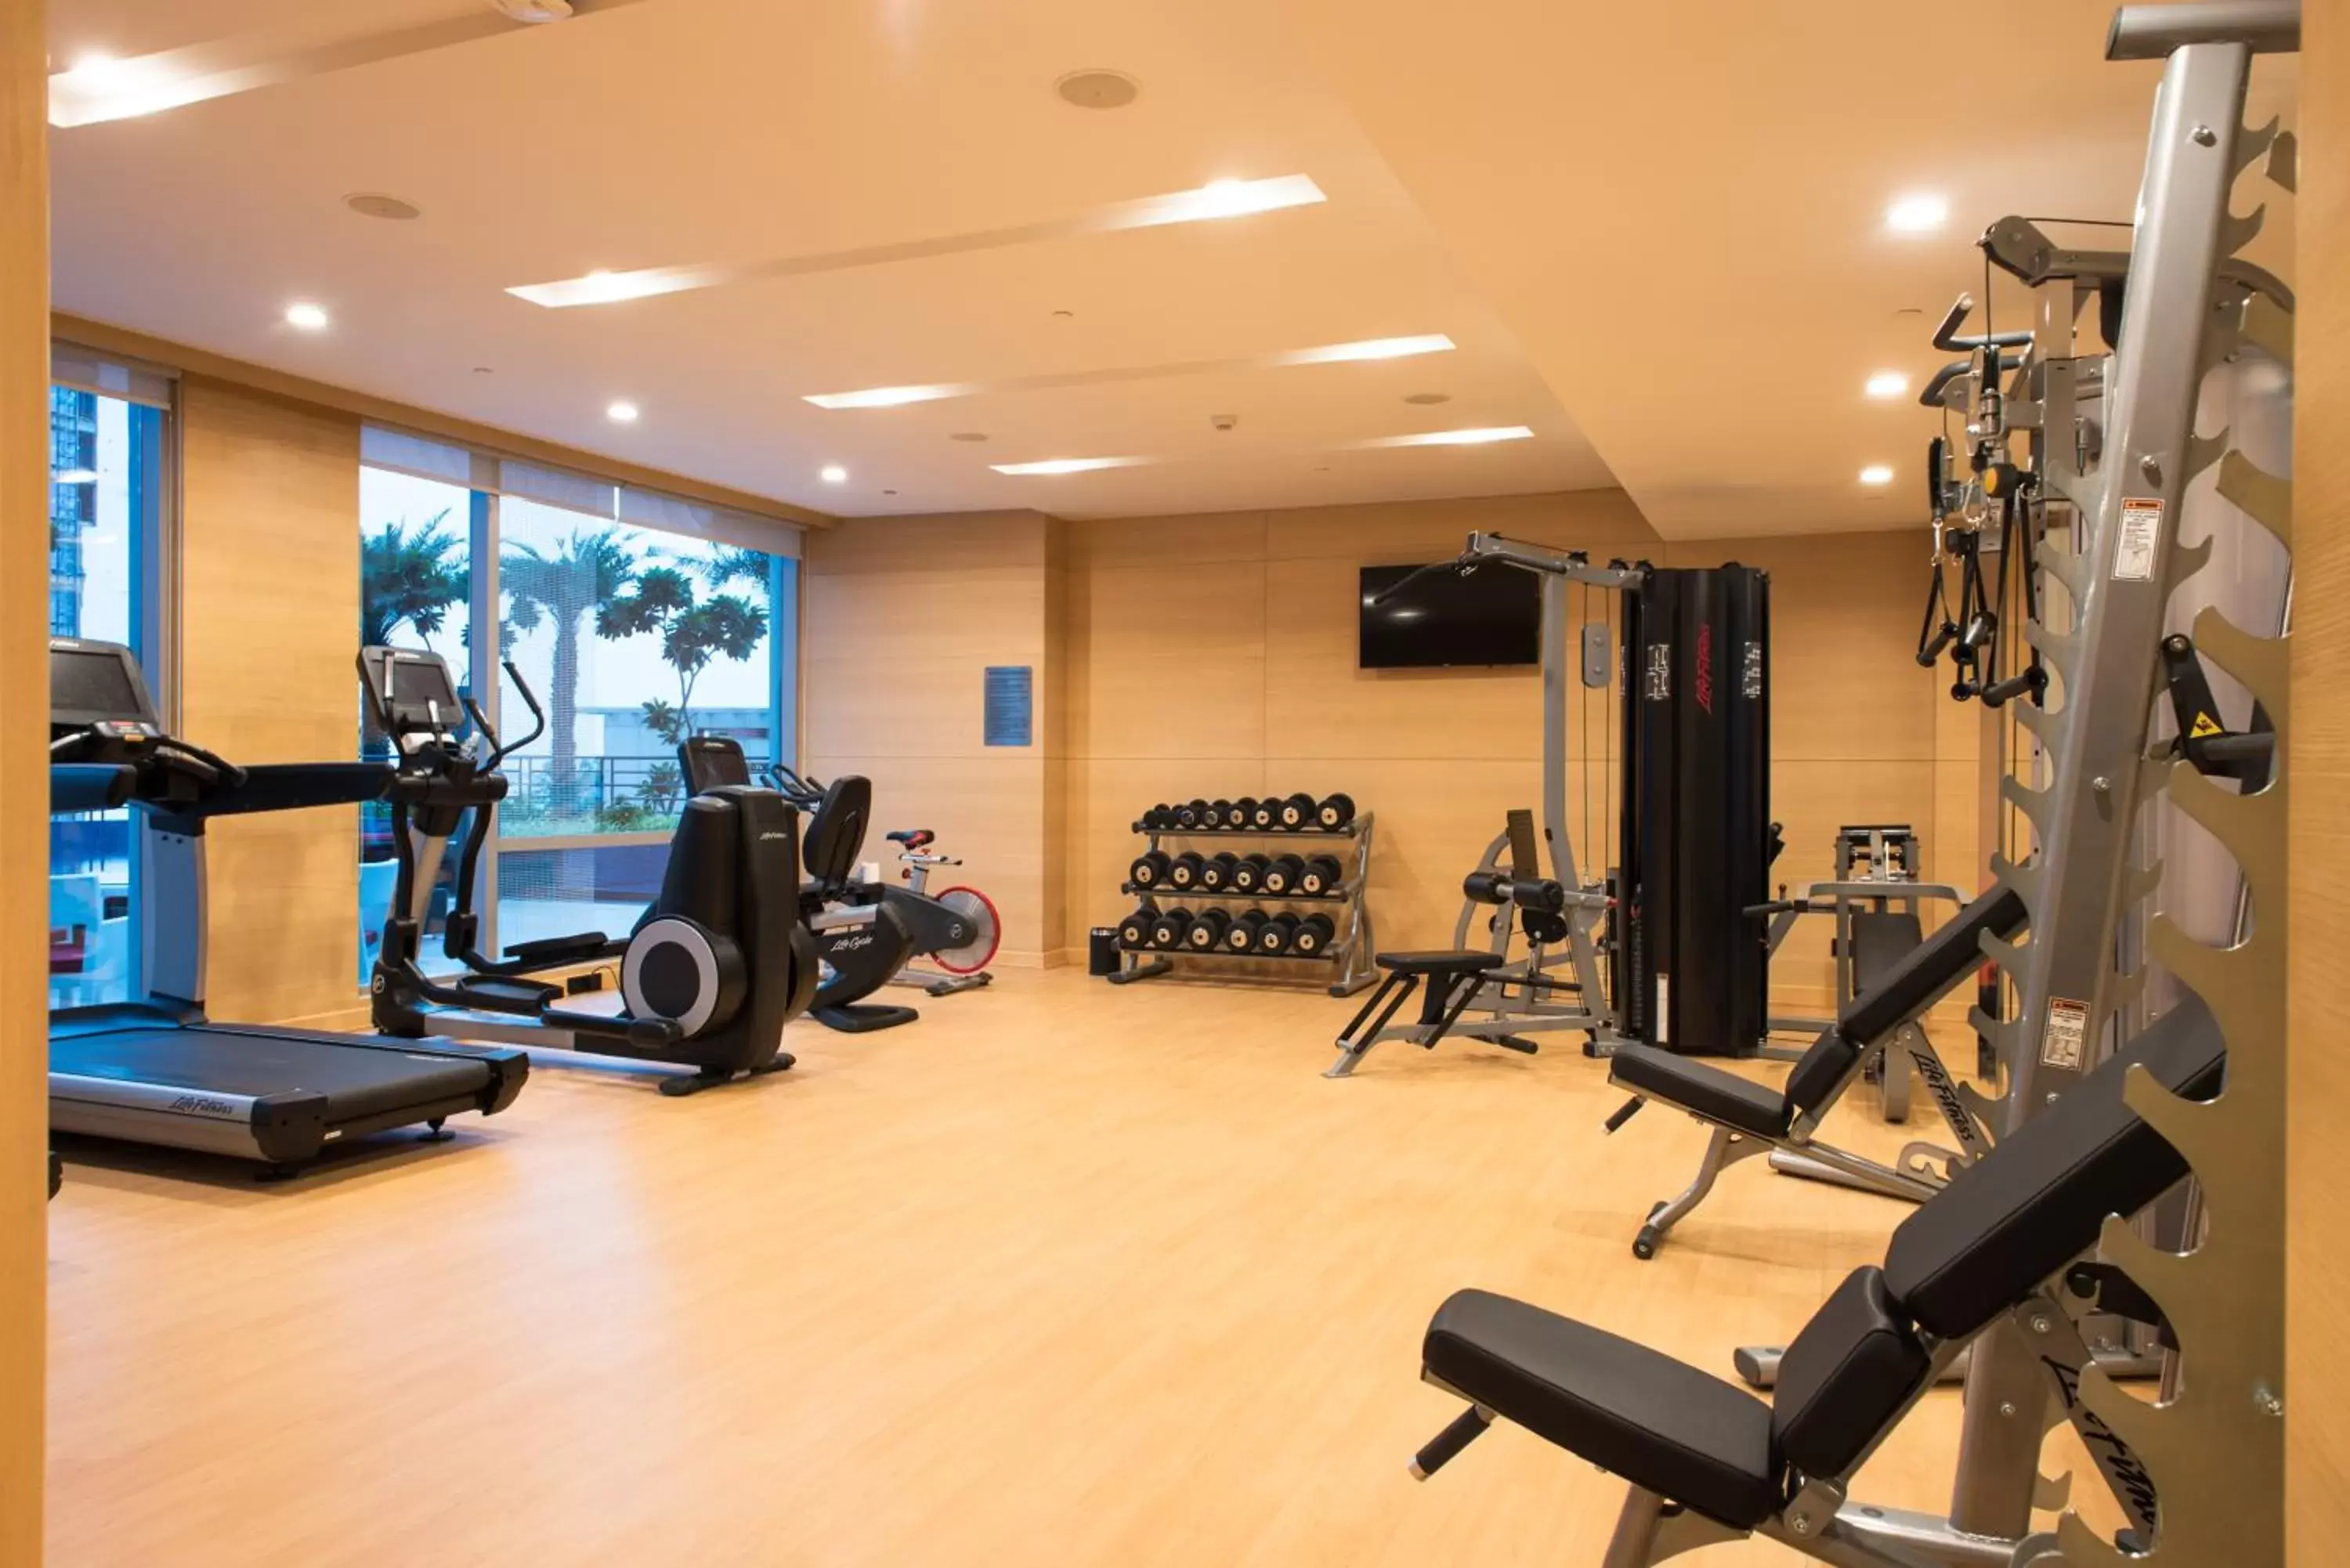 Fitness centre/facilities, Fitness Center/Facilities in Hyatt Regency Lucknow Gomti Nagar